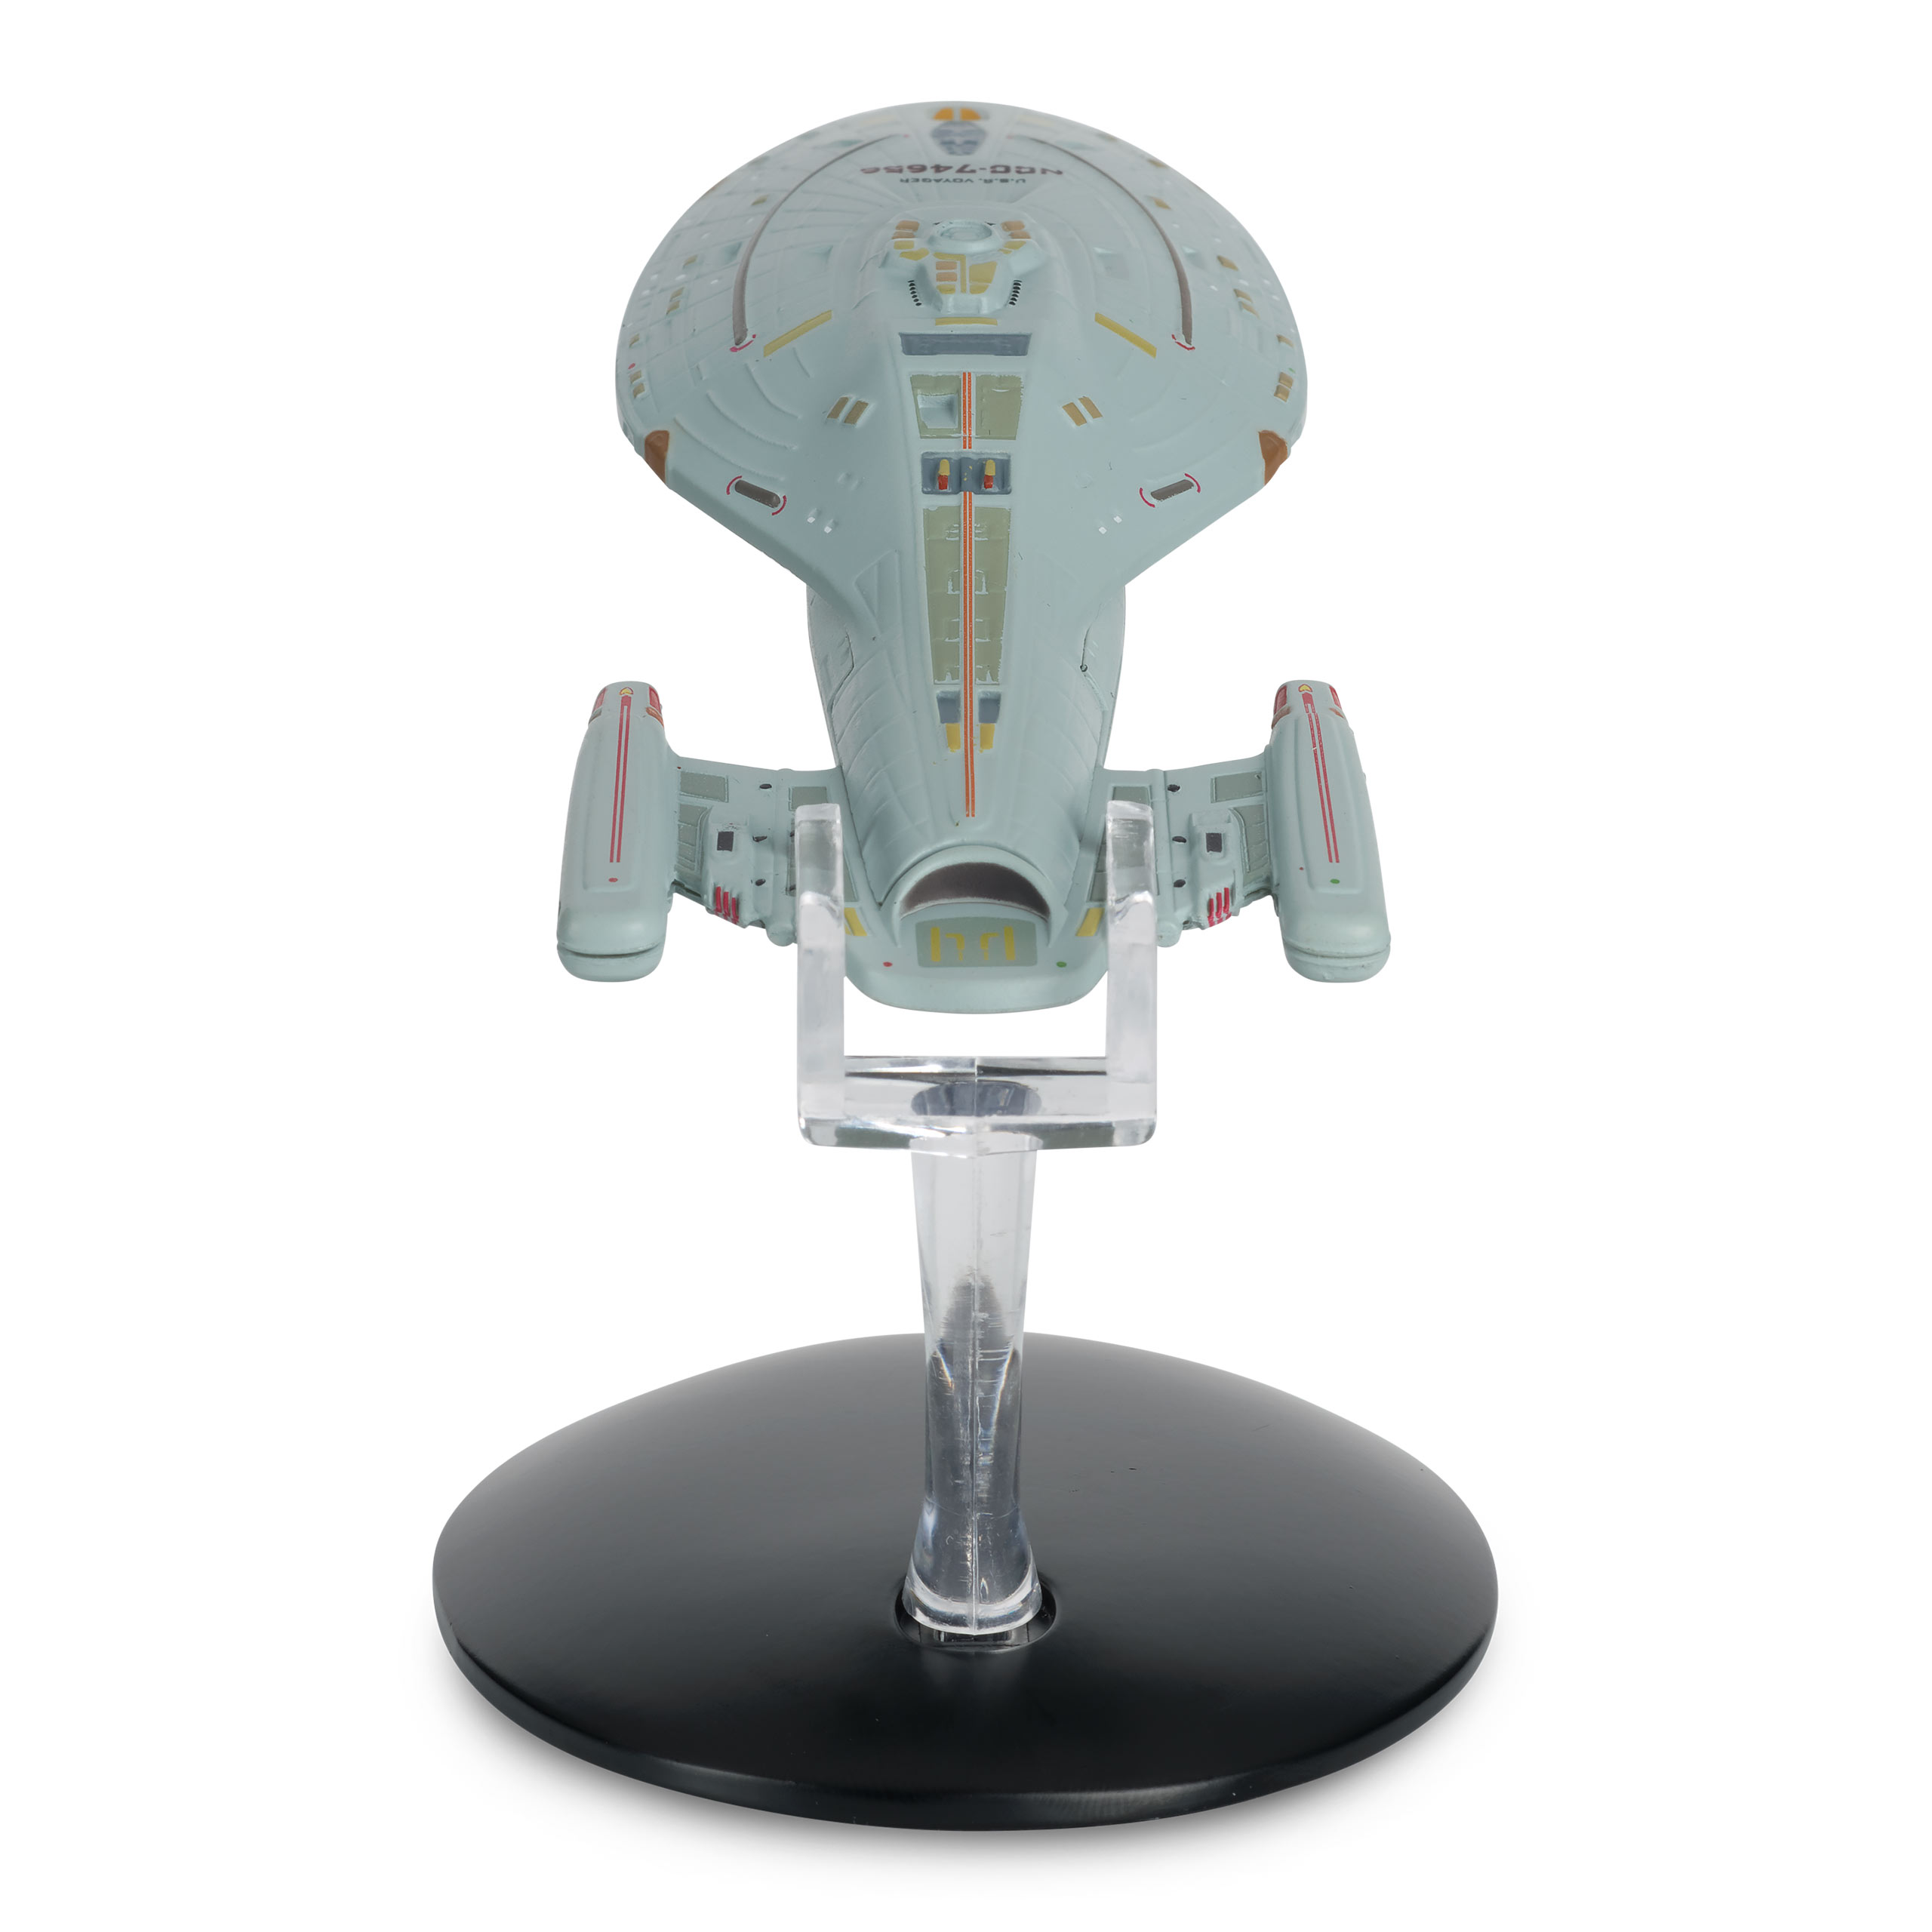 Star Trek - Ruimteschip U.S.S. Voyager NCC-74656 Hero Collector Figuur